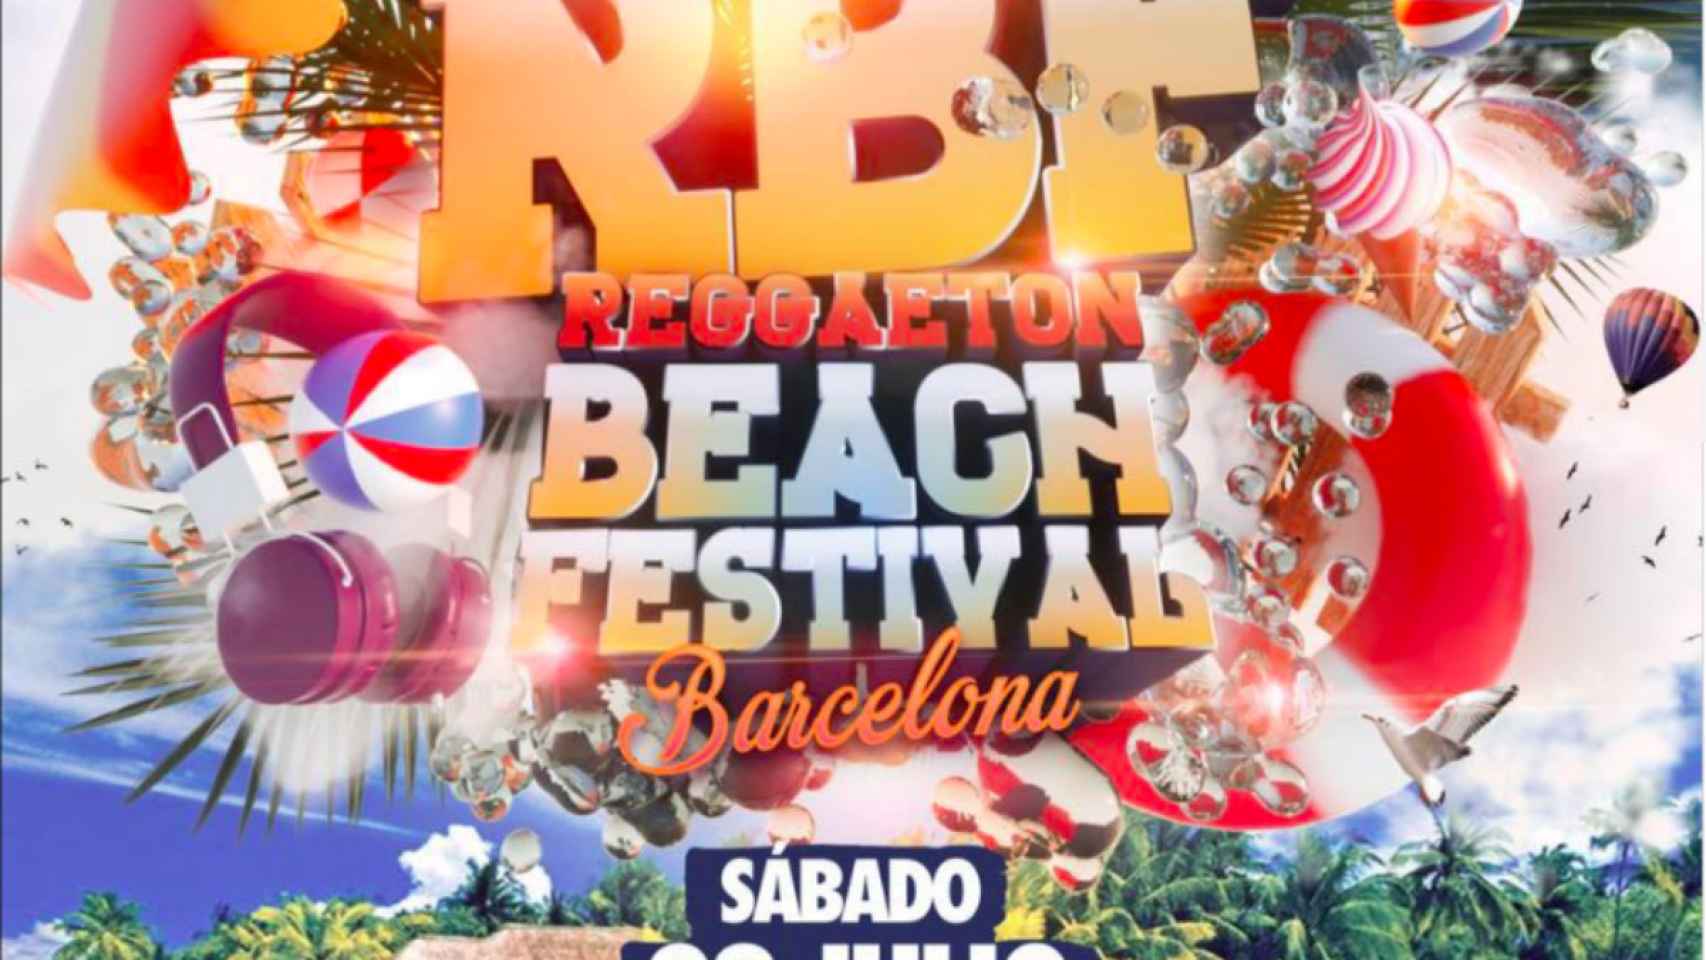 Reggaeton Beach Festical BCN